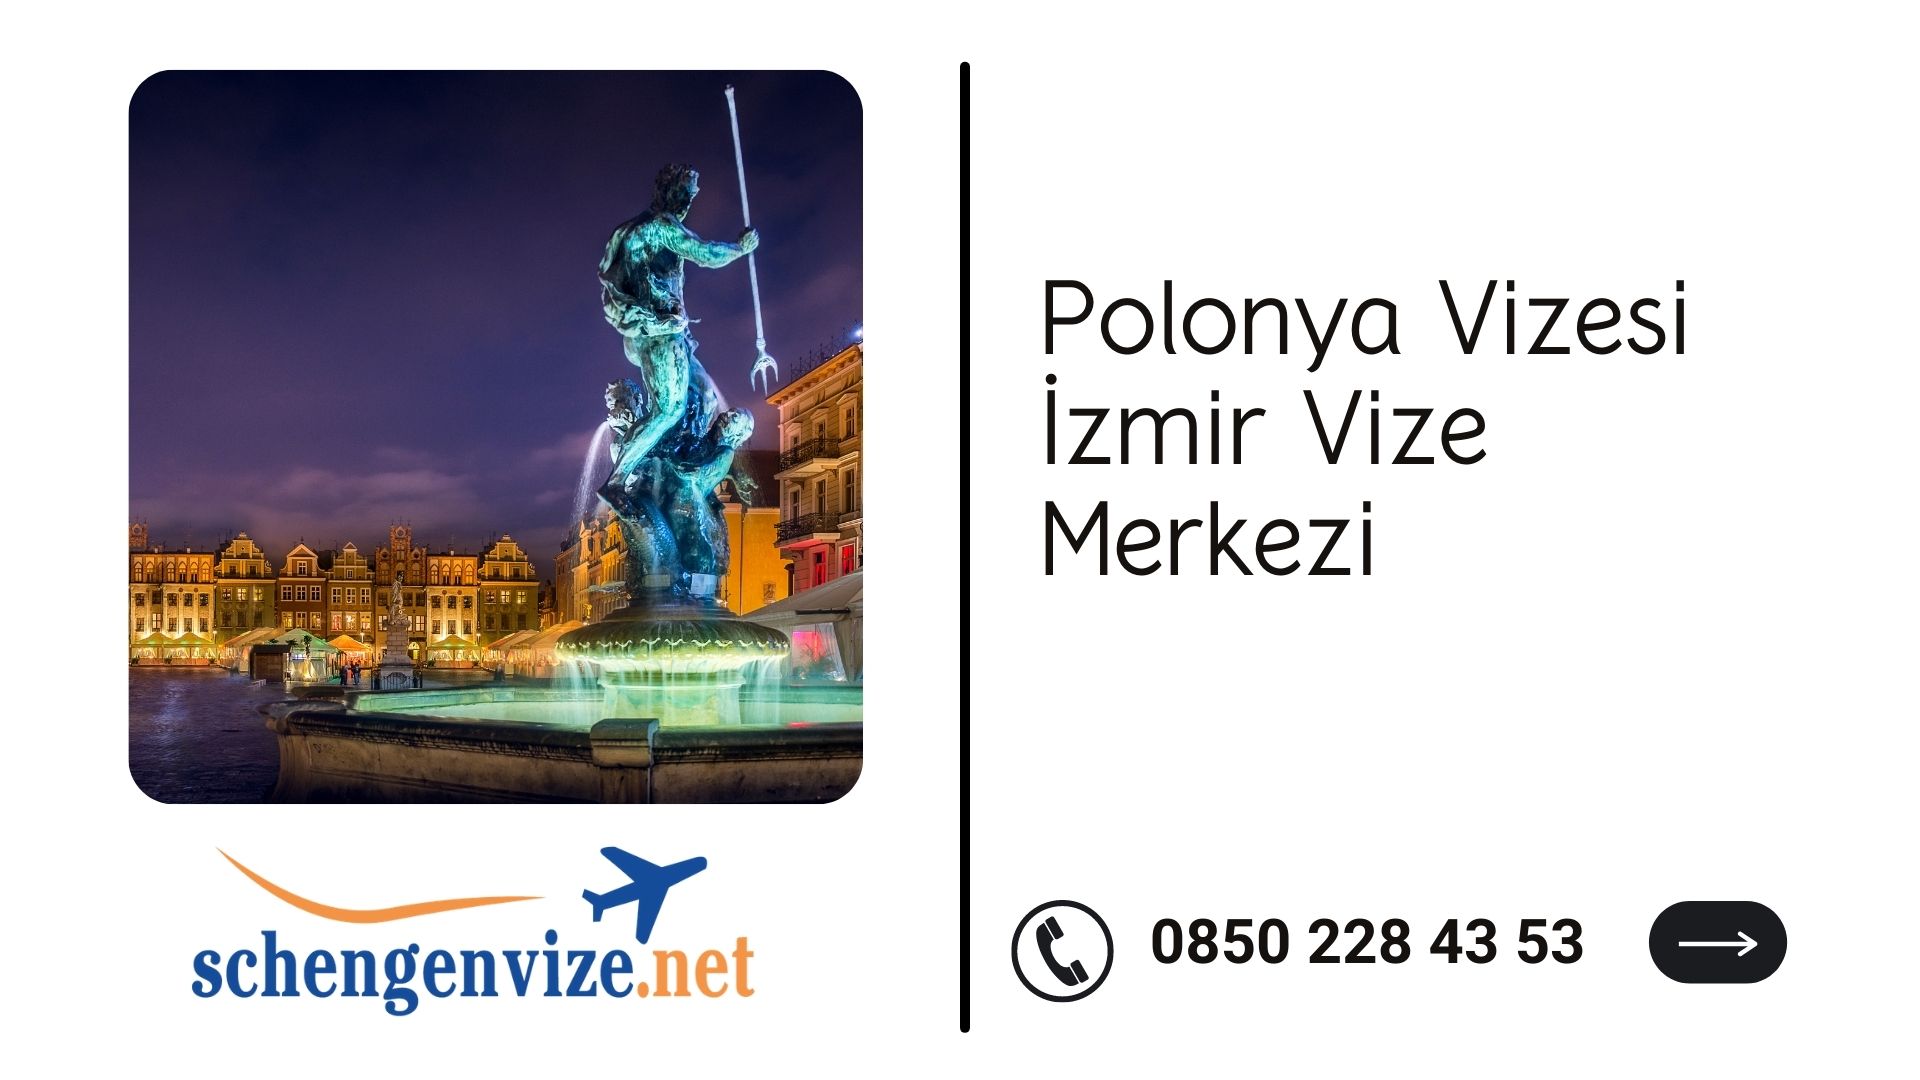 Polonya Vizesi İzmir Vize Merkezi